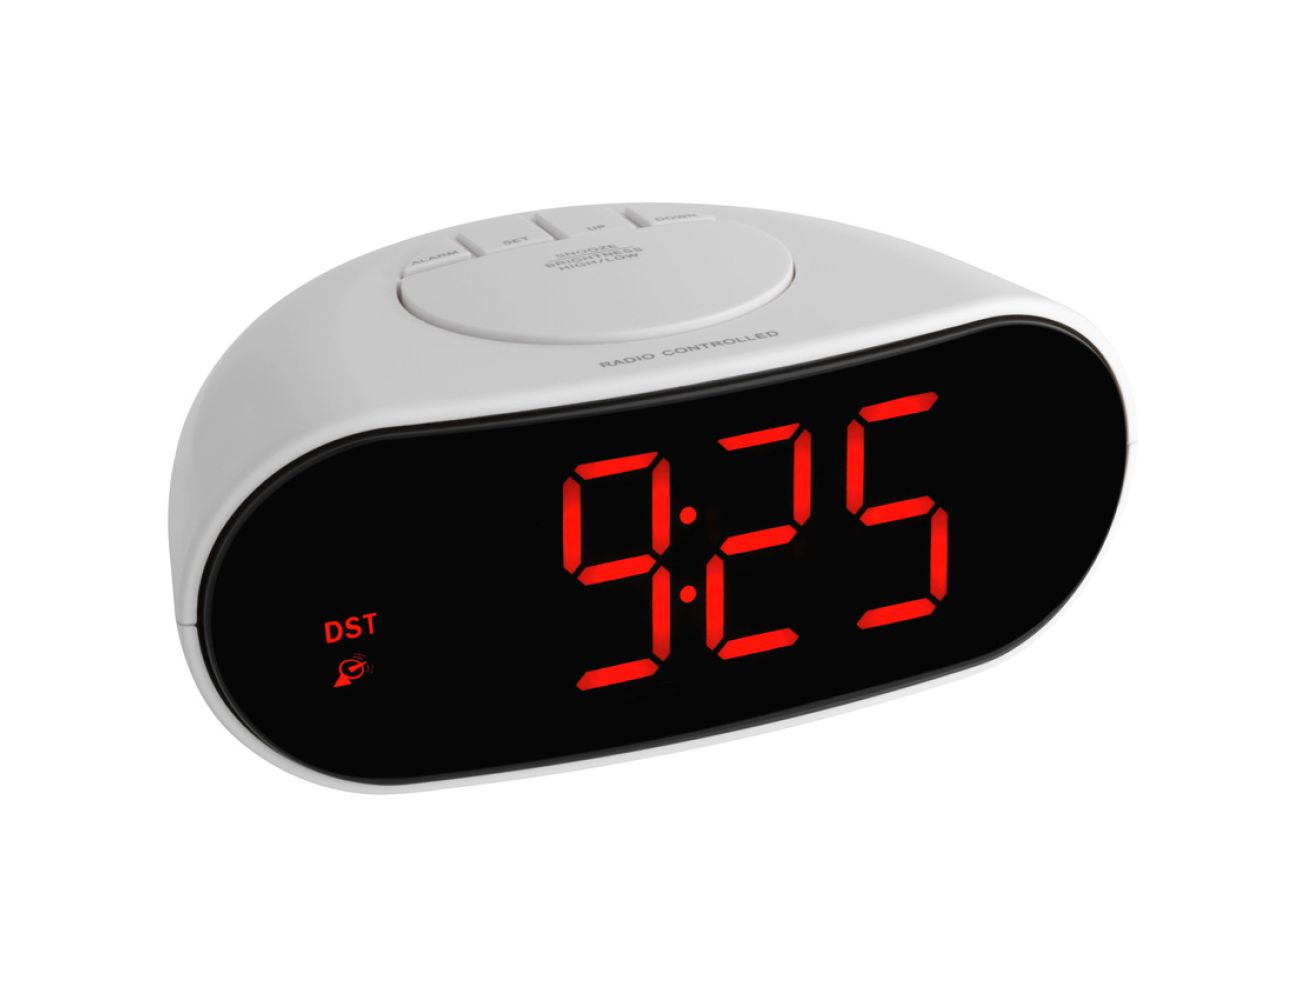 Настольные часы TFA (602505) красная индикация, 78x170x110мм